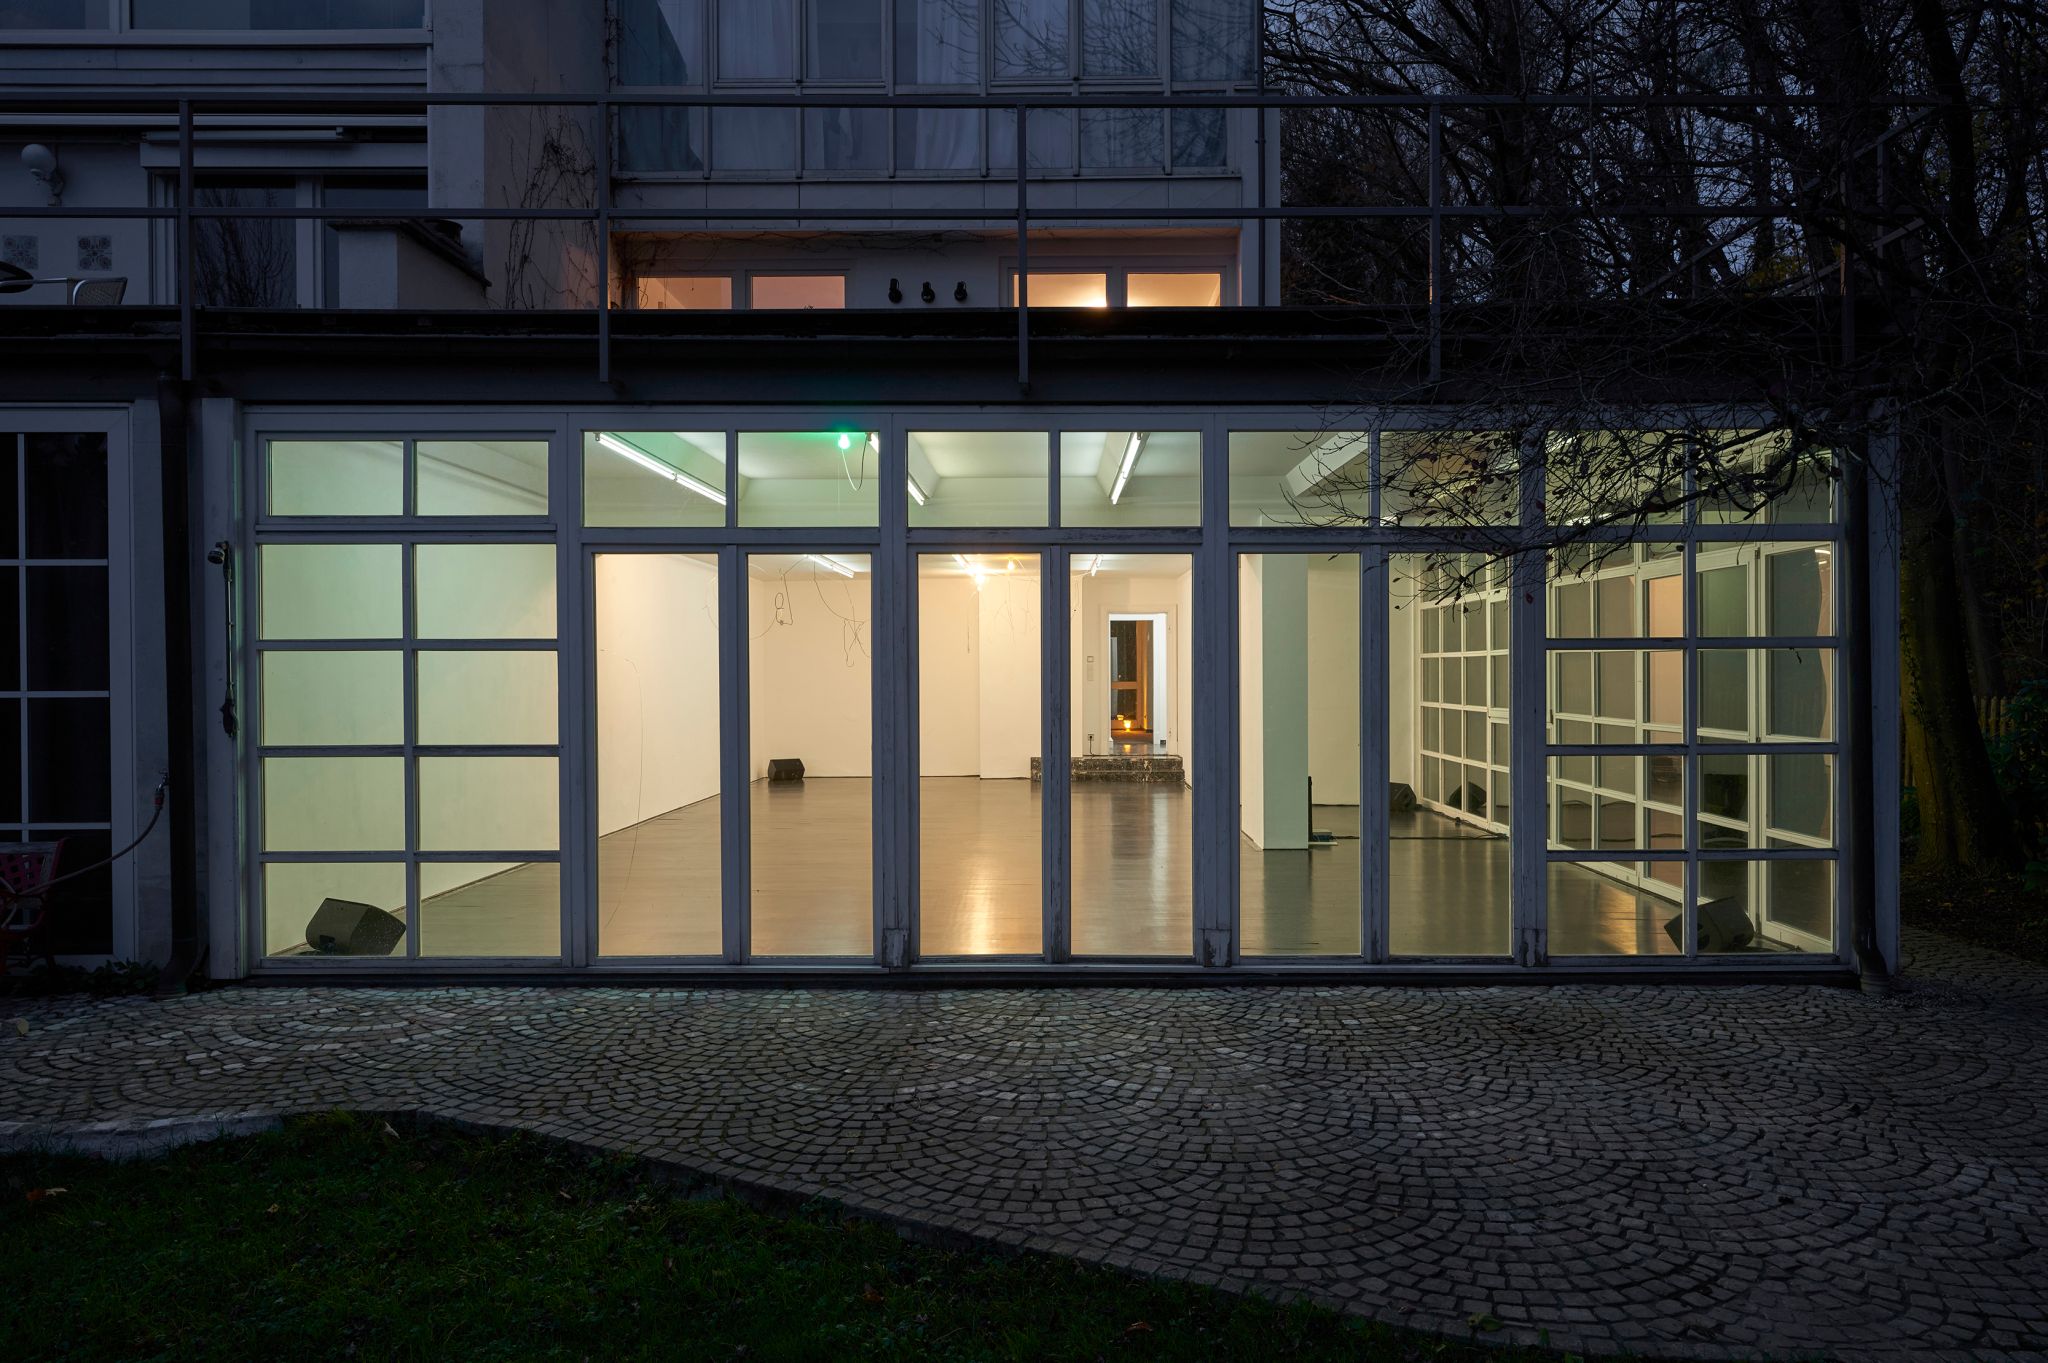 Installation view, Davide Stucchi, DS, Deborah Schamoni, 2020